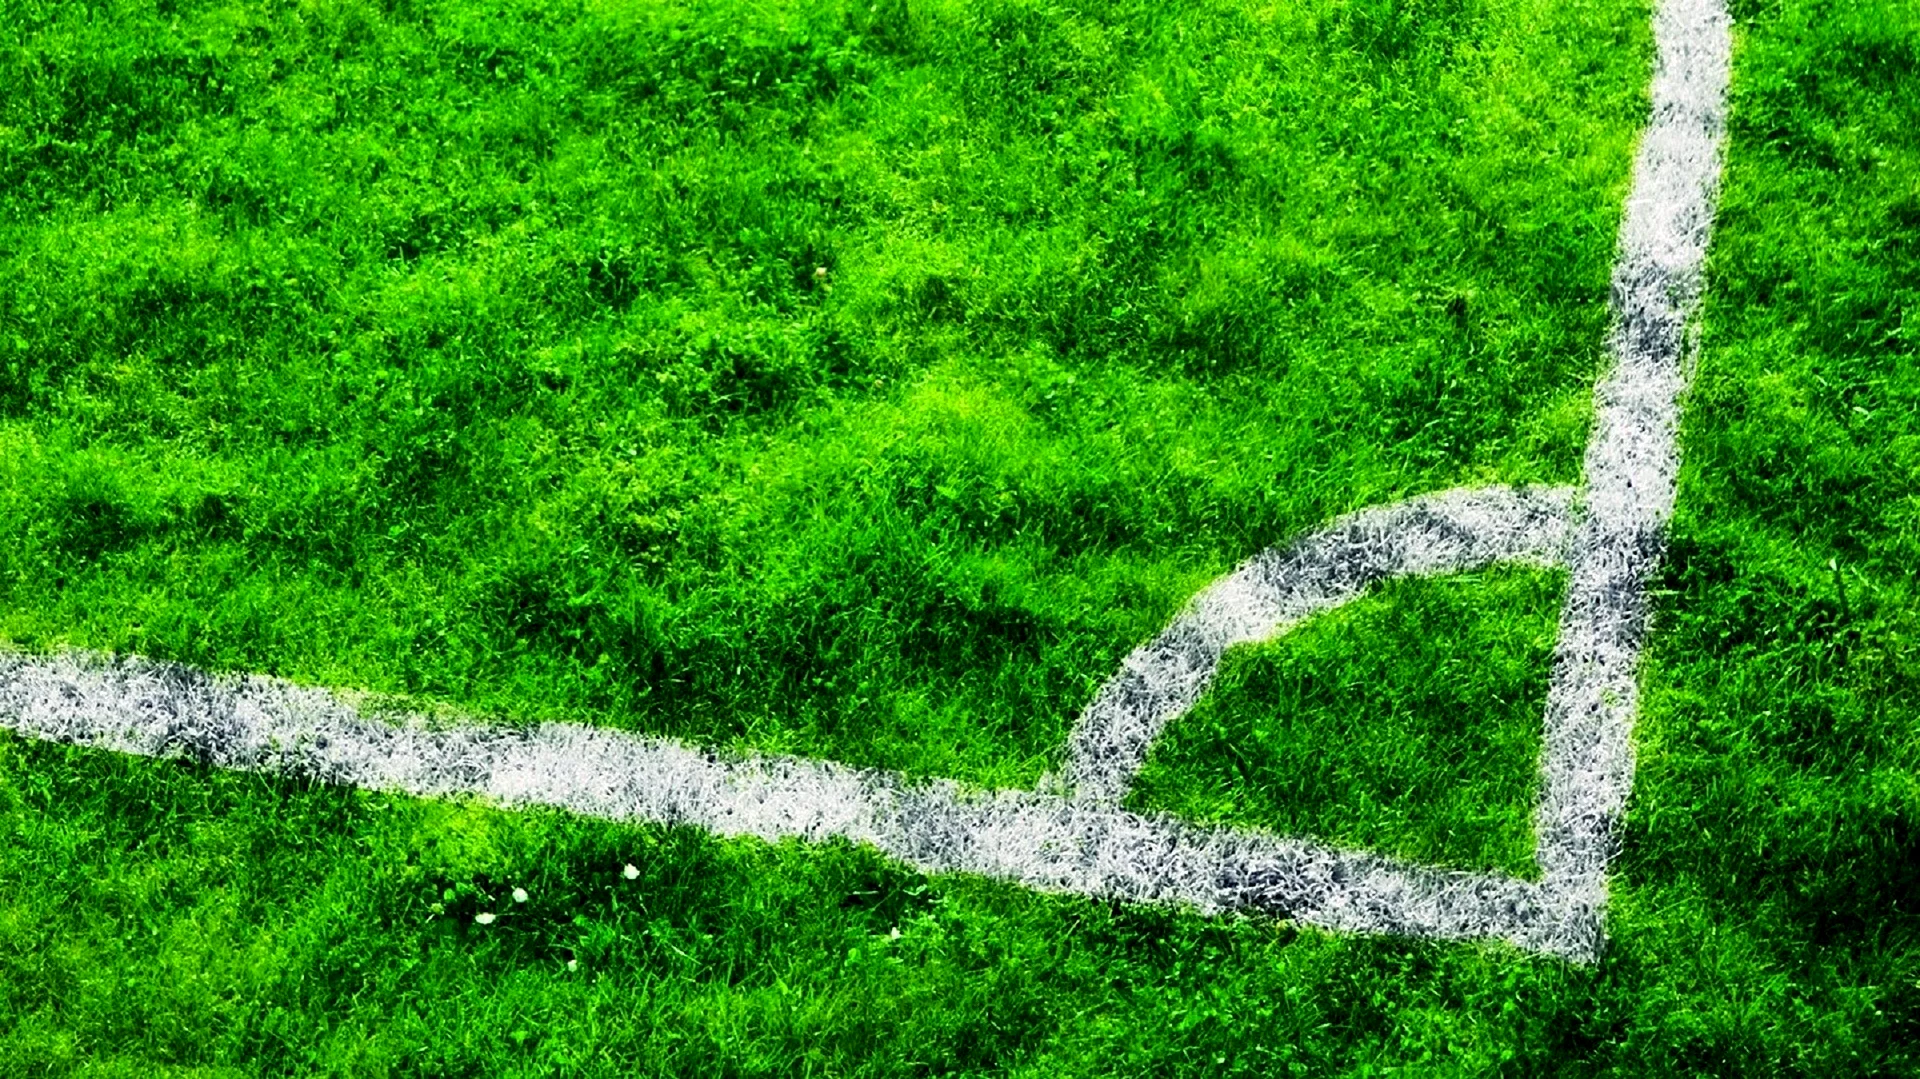 Football Grass Wallpaper